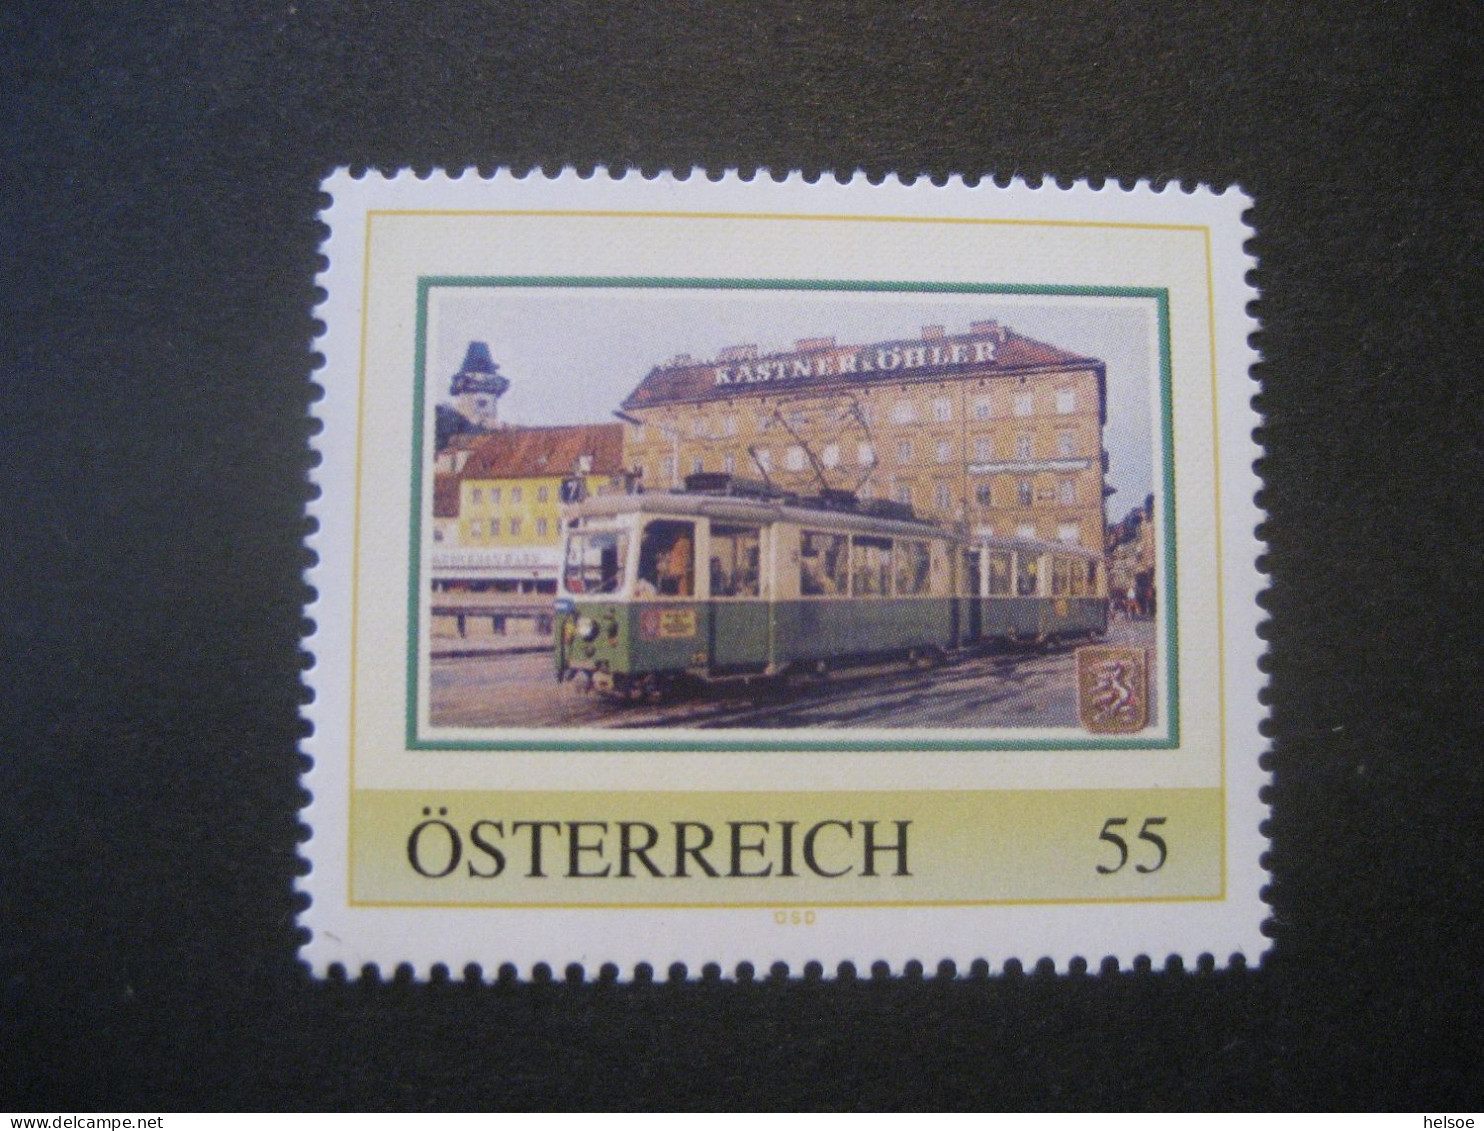 Österreich- PM Grazer Straßenbahn Ungebraucht - Personalisierte Briefmarken